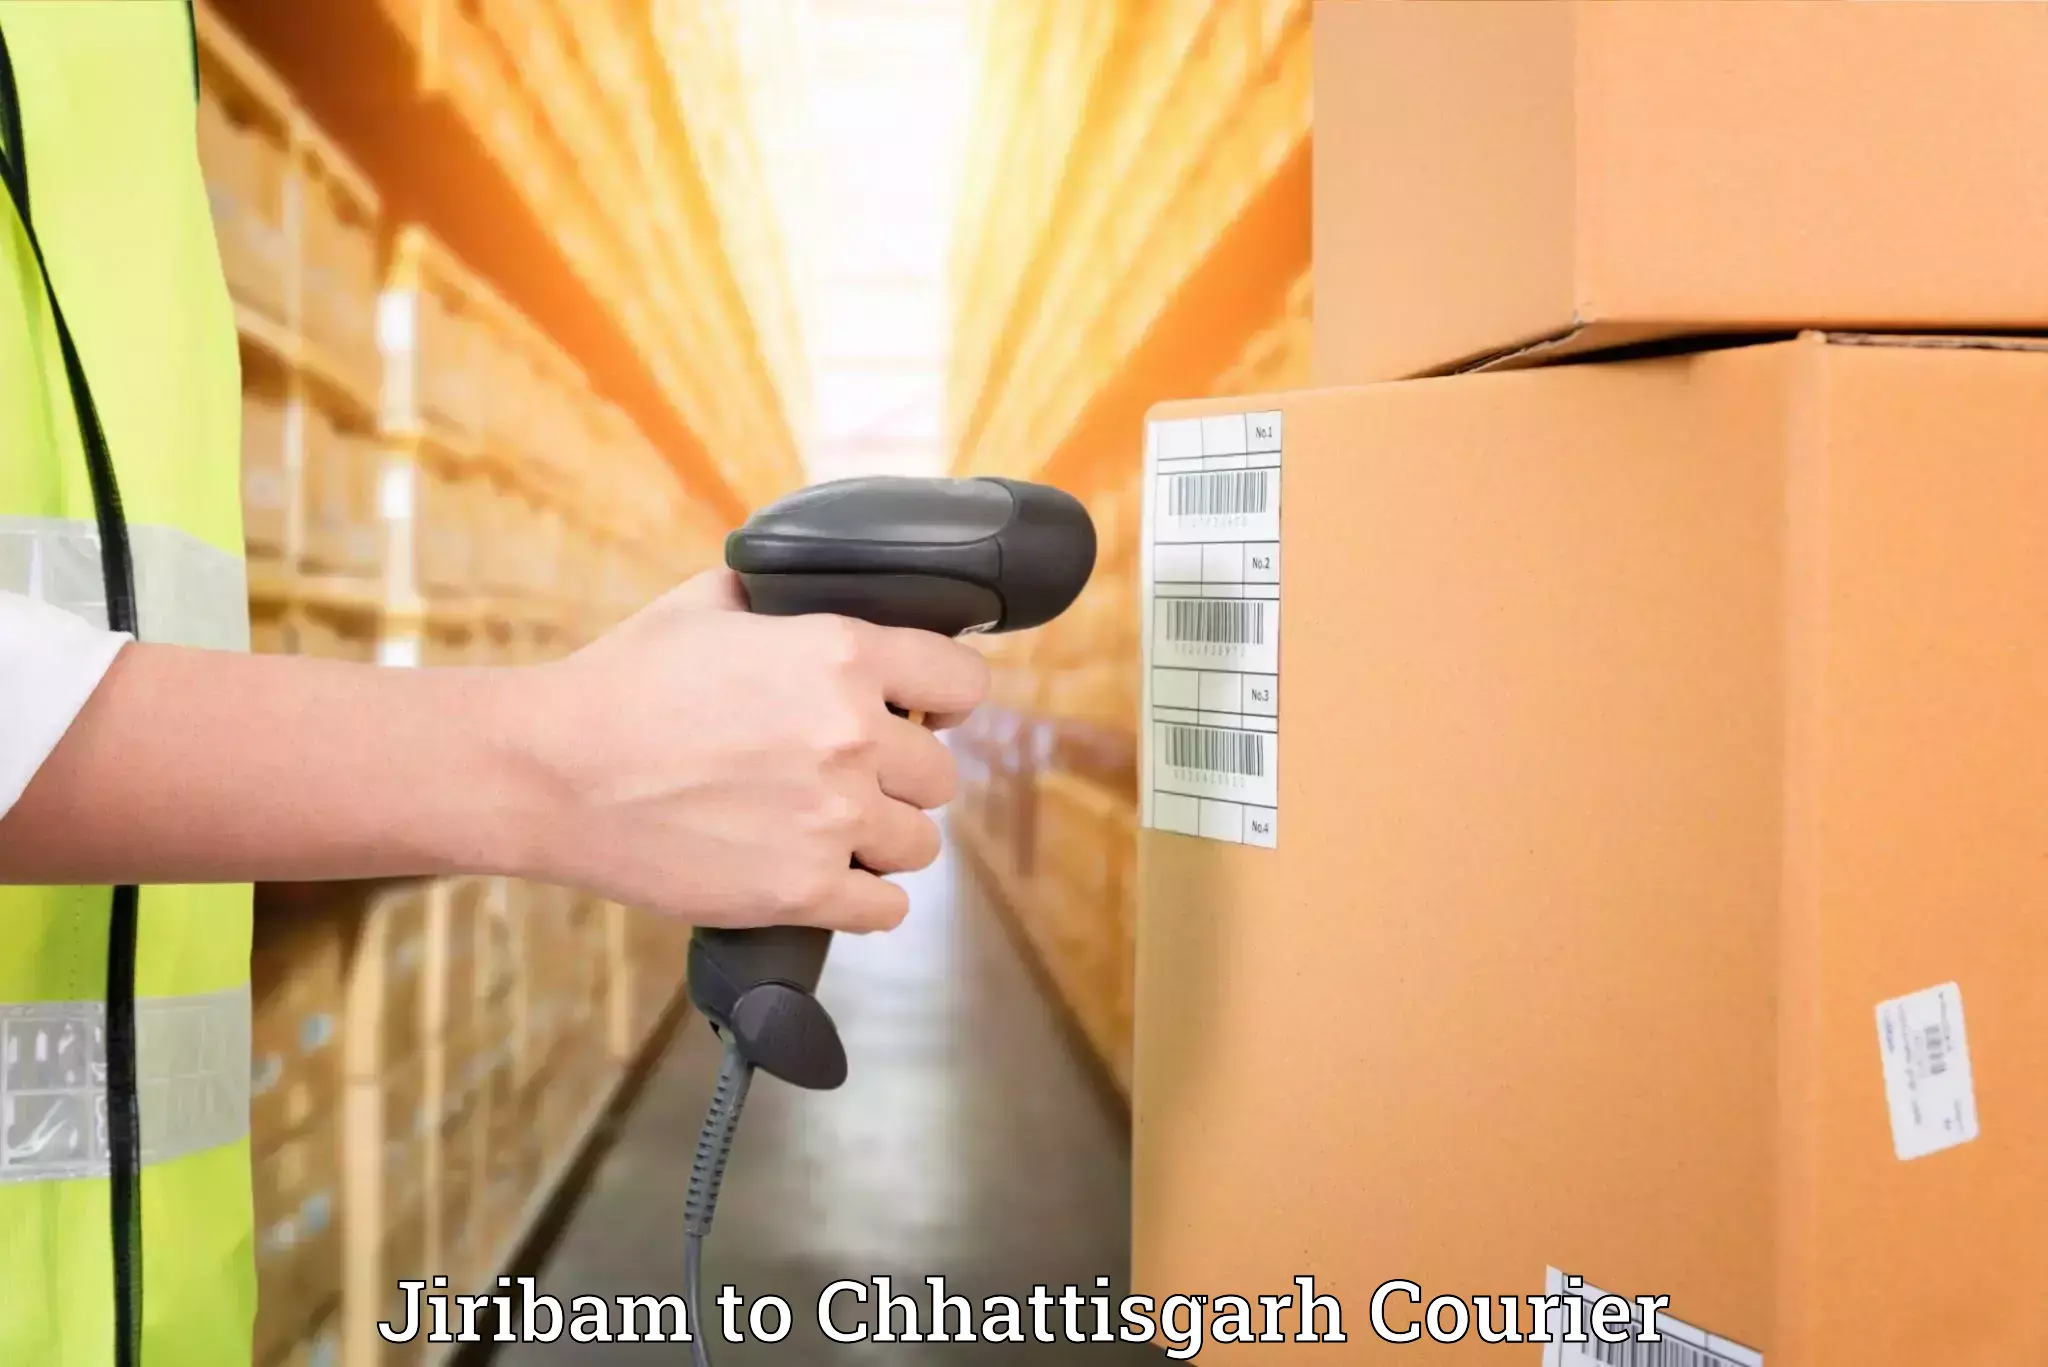 Furniture relocation services Jiribam to Chhattisgarh